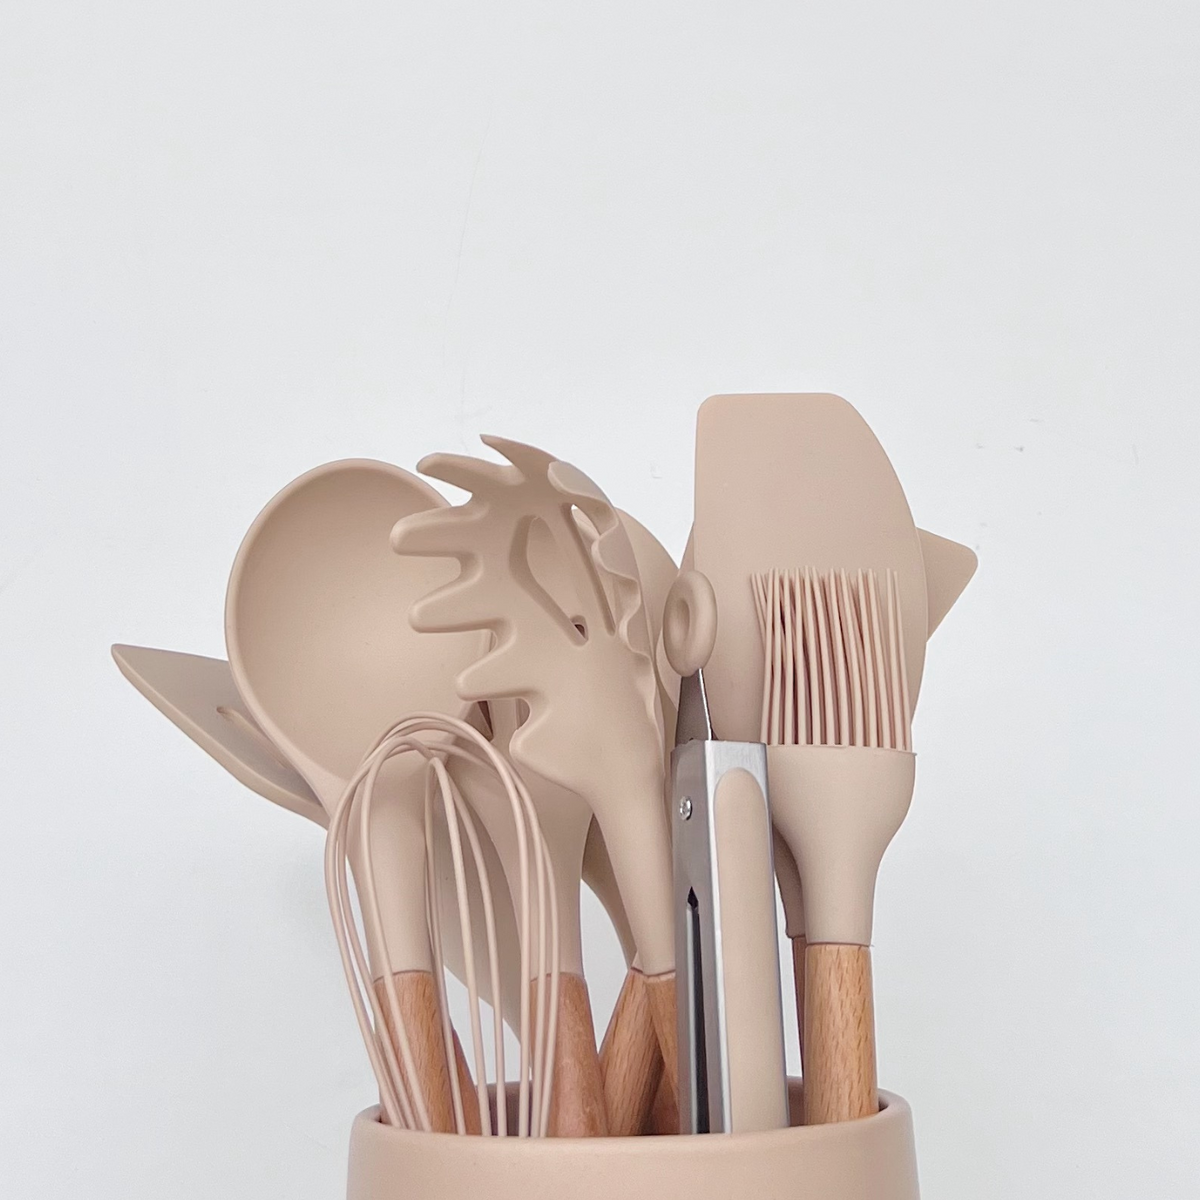 beige kitchen utensils set